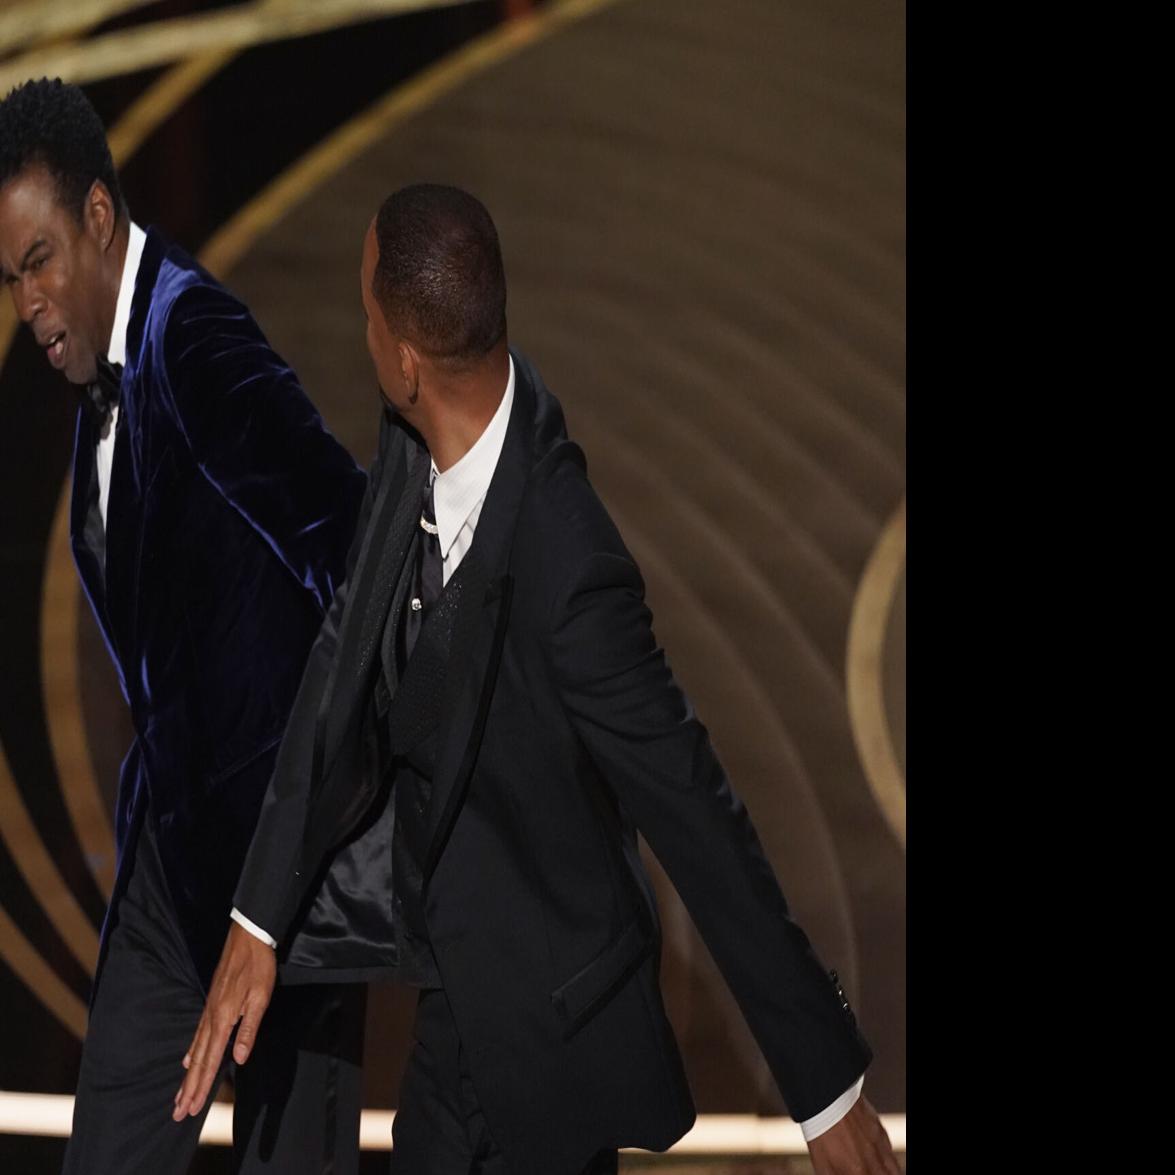 Premios Oscar: califican de "inadecuada" la respuesta ante bofetada de Will Smith a Chris Rock | Otros | elvocero.com